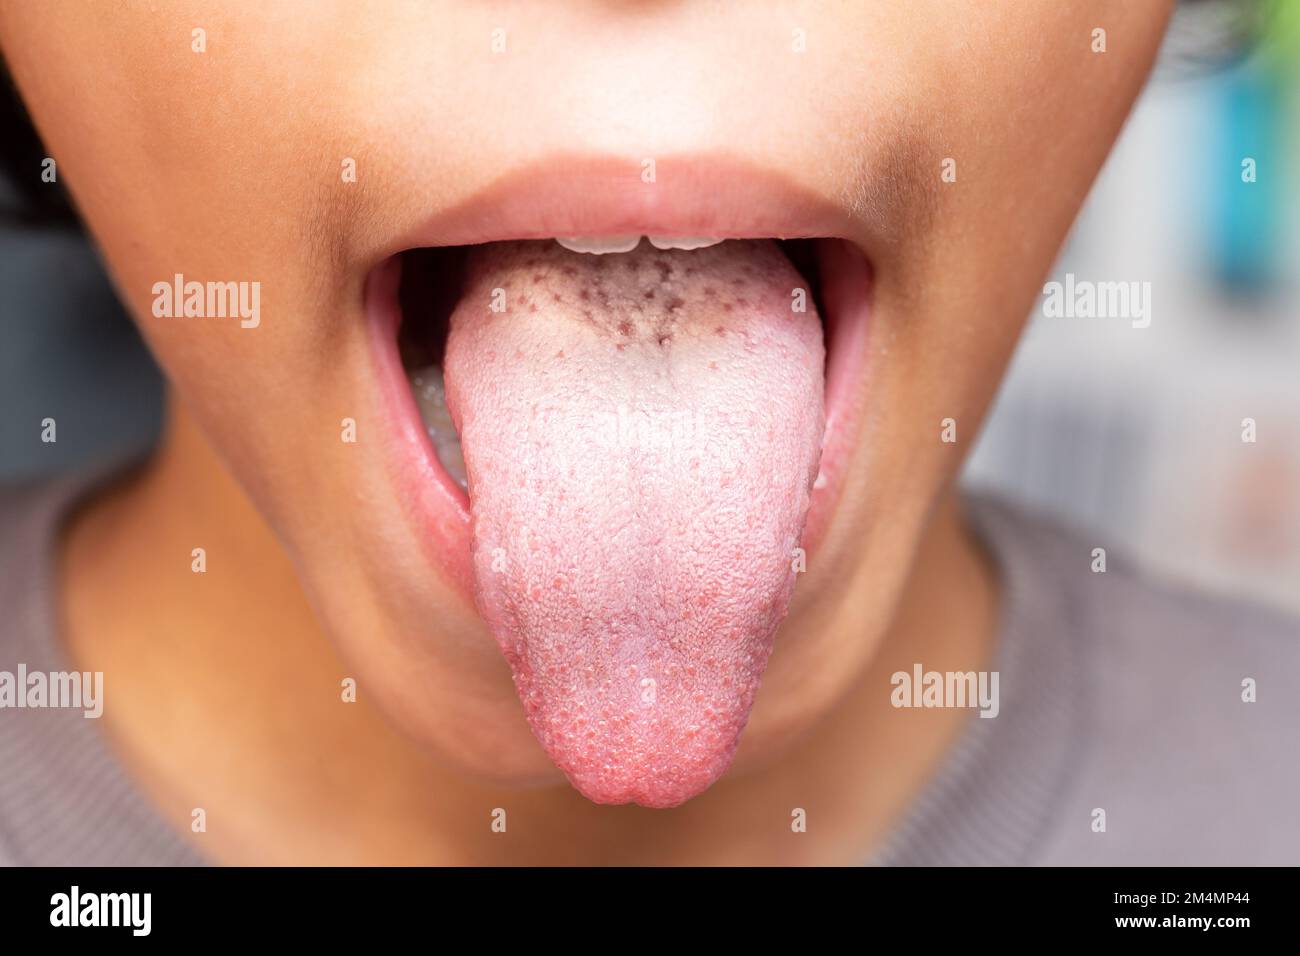 Nahaufnahme Weißes Mädchen zeigen ihre Zunge für Arzt Check weiße Zunge.Konzept für Symptome von Virus, Krankheit und Bakterien in Zunge Konzept Stockfoto